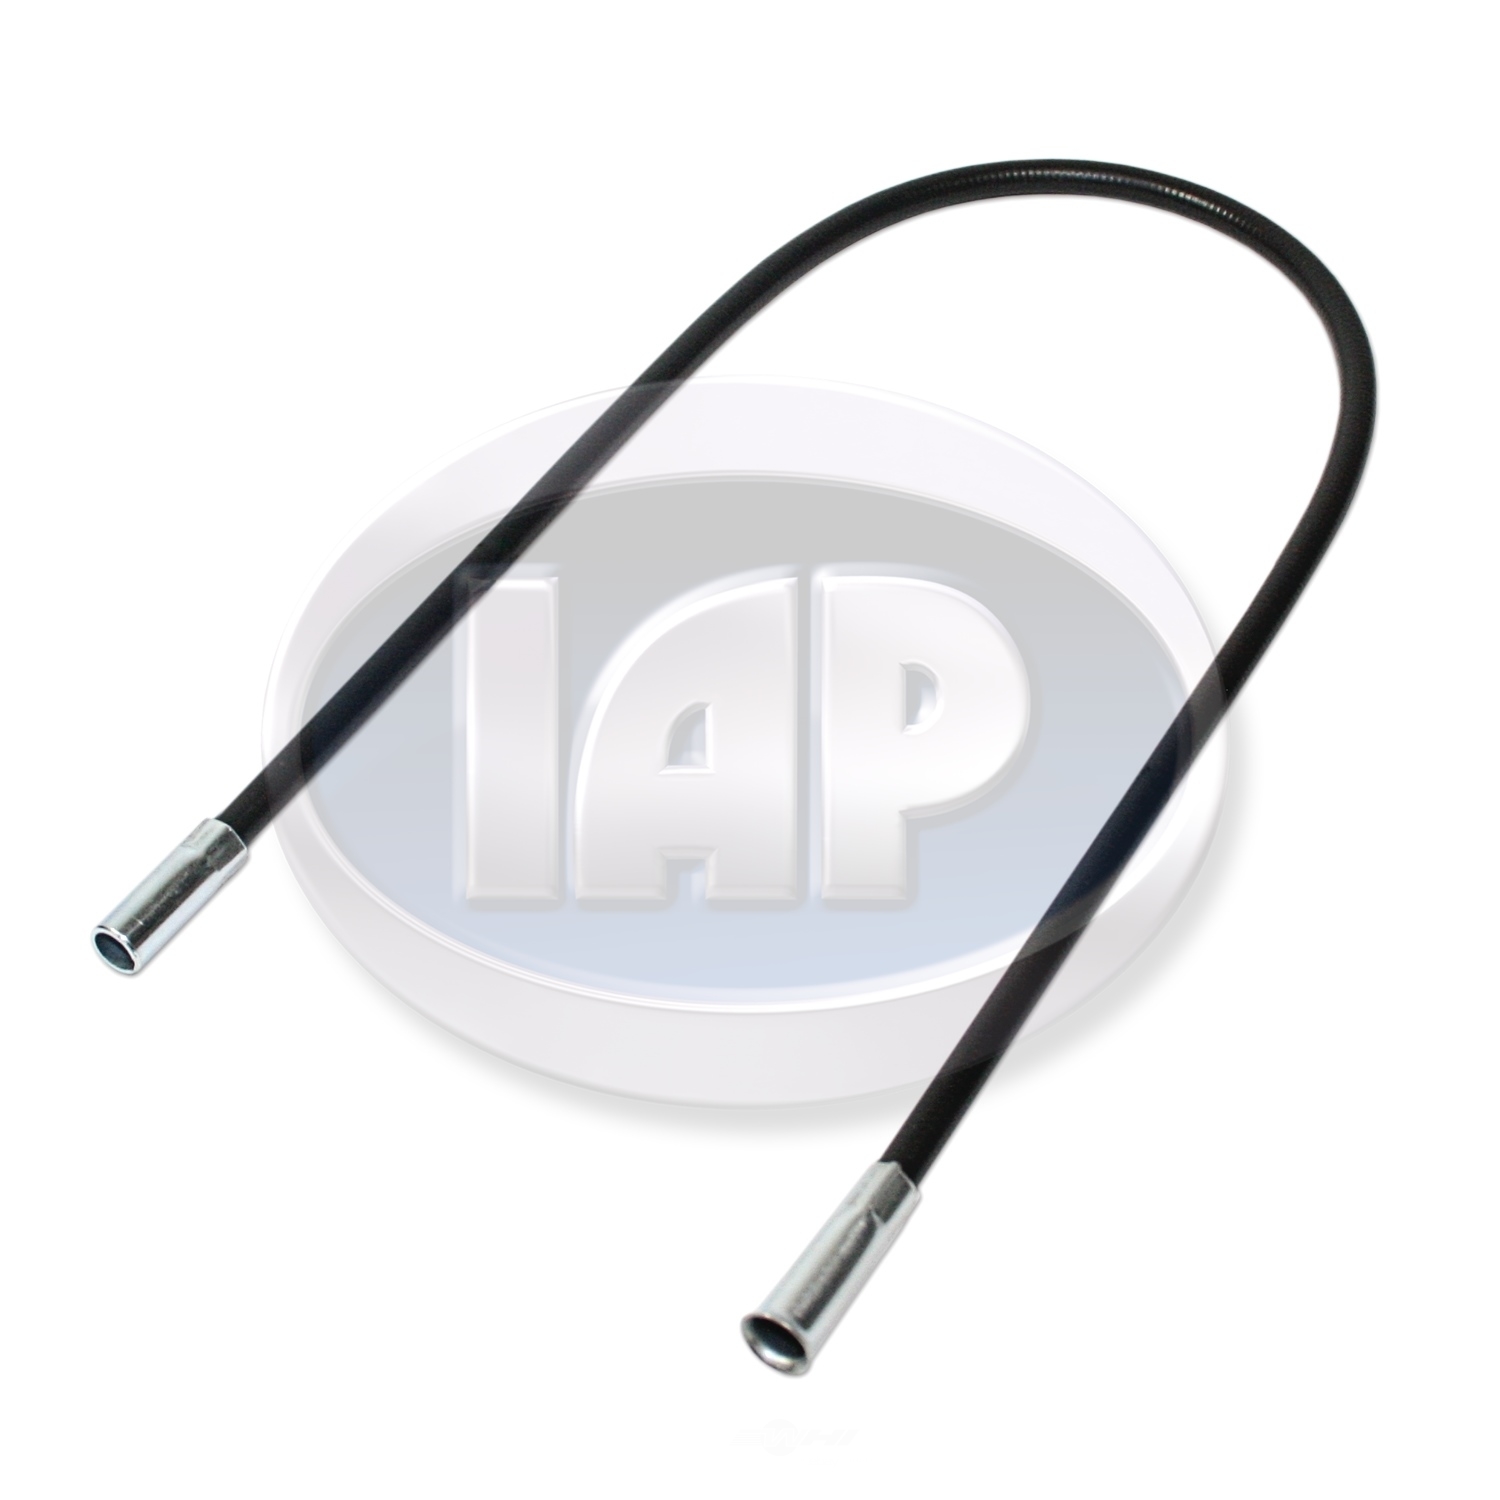 IAP/KUHLTEK MOTORWERKS - Carburetor Accelerator Cable Guide - KMS 113721551